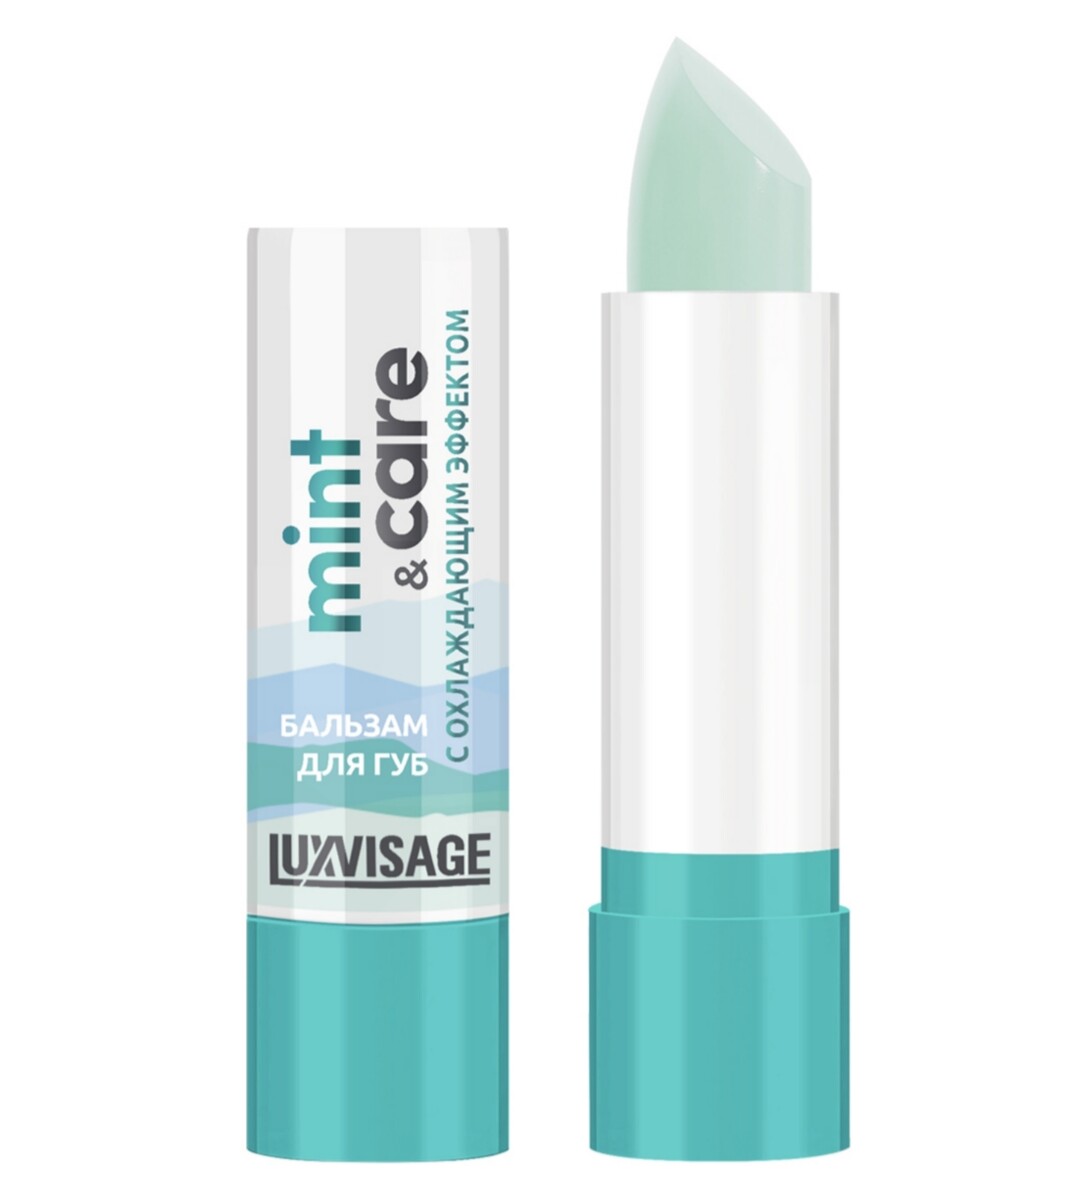 Luxvisage бальзам для губ luxvisage mint & care с охлаждающим эффектом 3,9г кружка mint